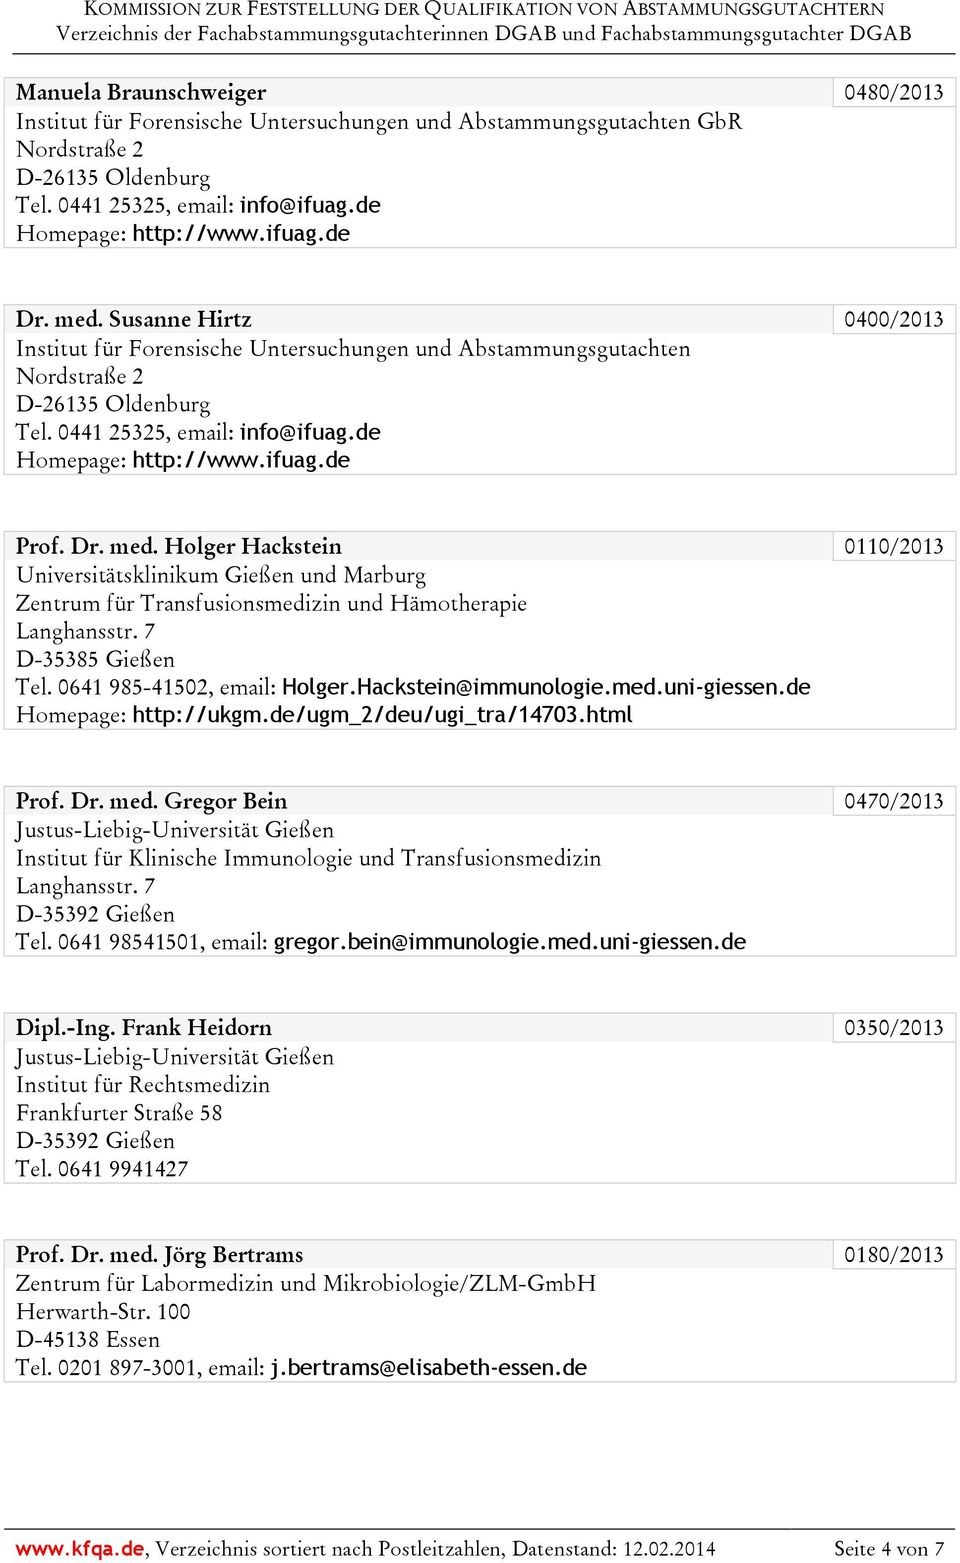 Dr. med. Holger Hackstein 0110/2013 Universitätsklinikum Gießen und Marburg Zentrum für Transfusionsmedizin und Hämotherapie Langhansstr. 7 D-35385 Gießen Tel. 0641 985-41502, email: Holger.